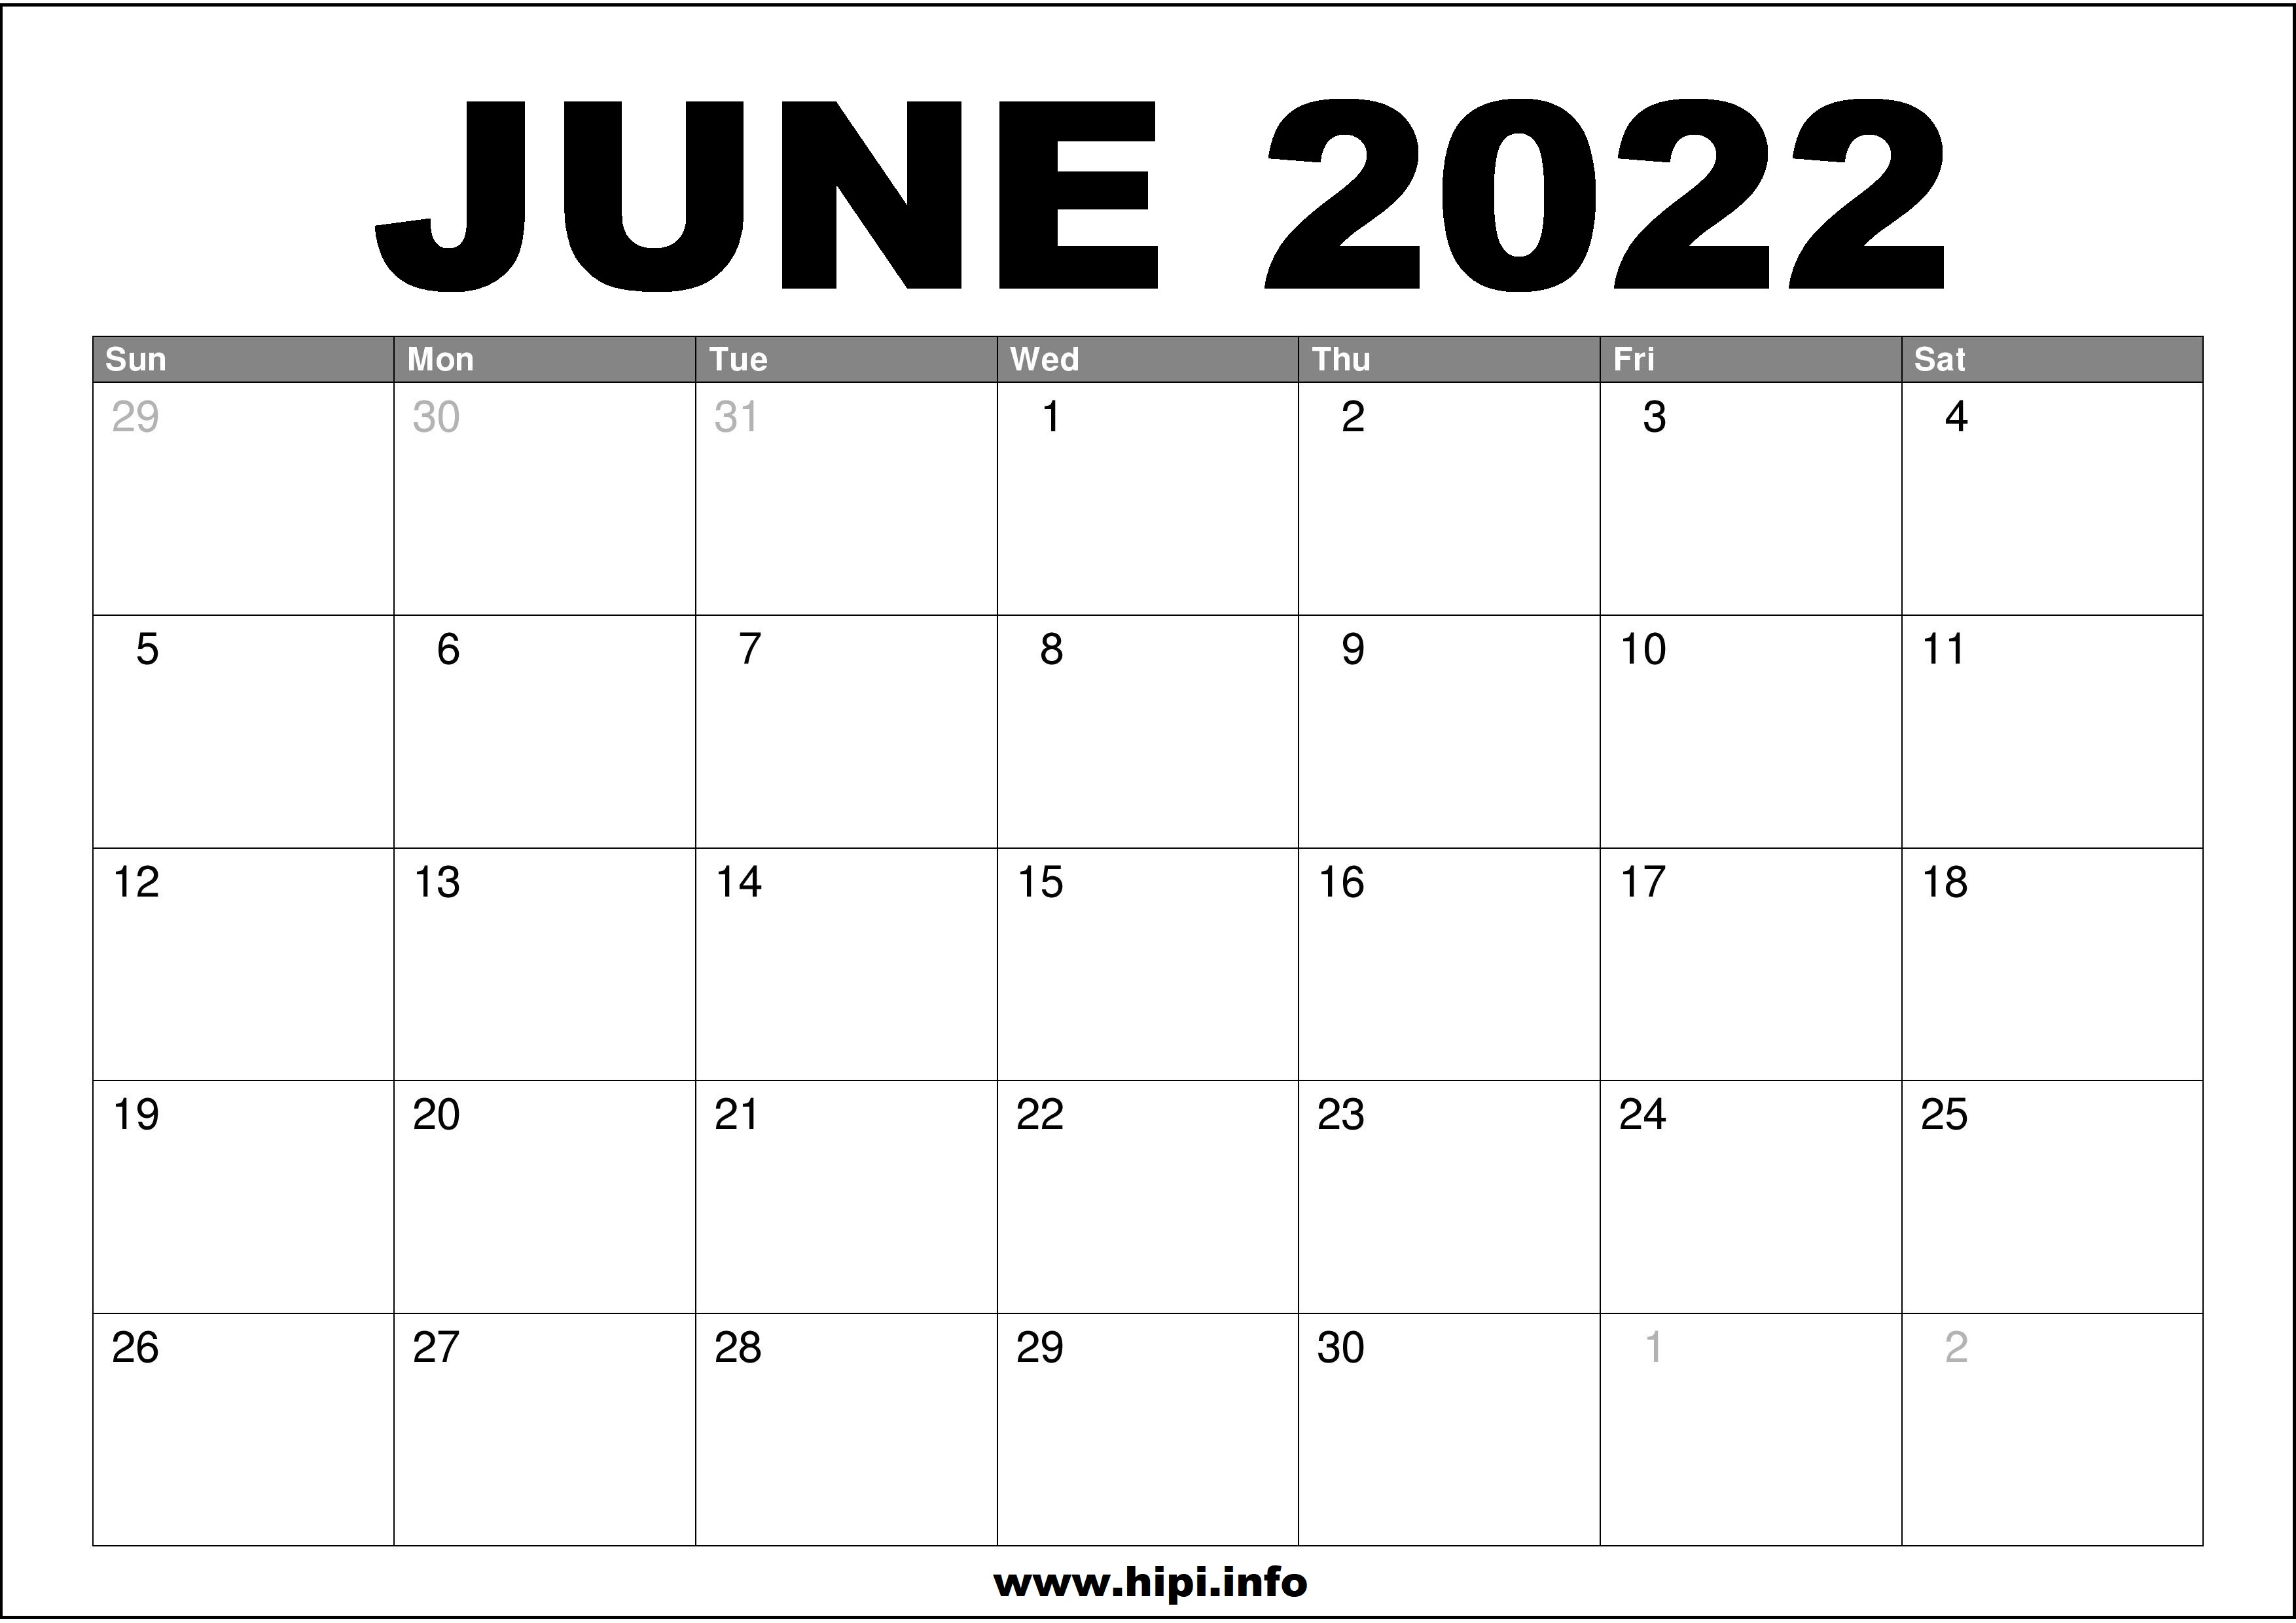 June 24 2022 Calendar June 2022 Calendar Printable Free - Hipi.info | Calendars Printable Free